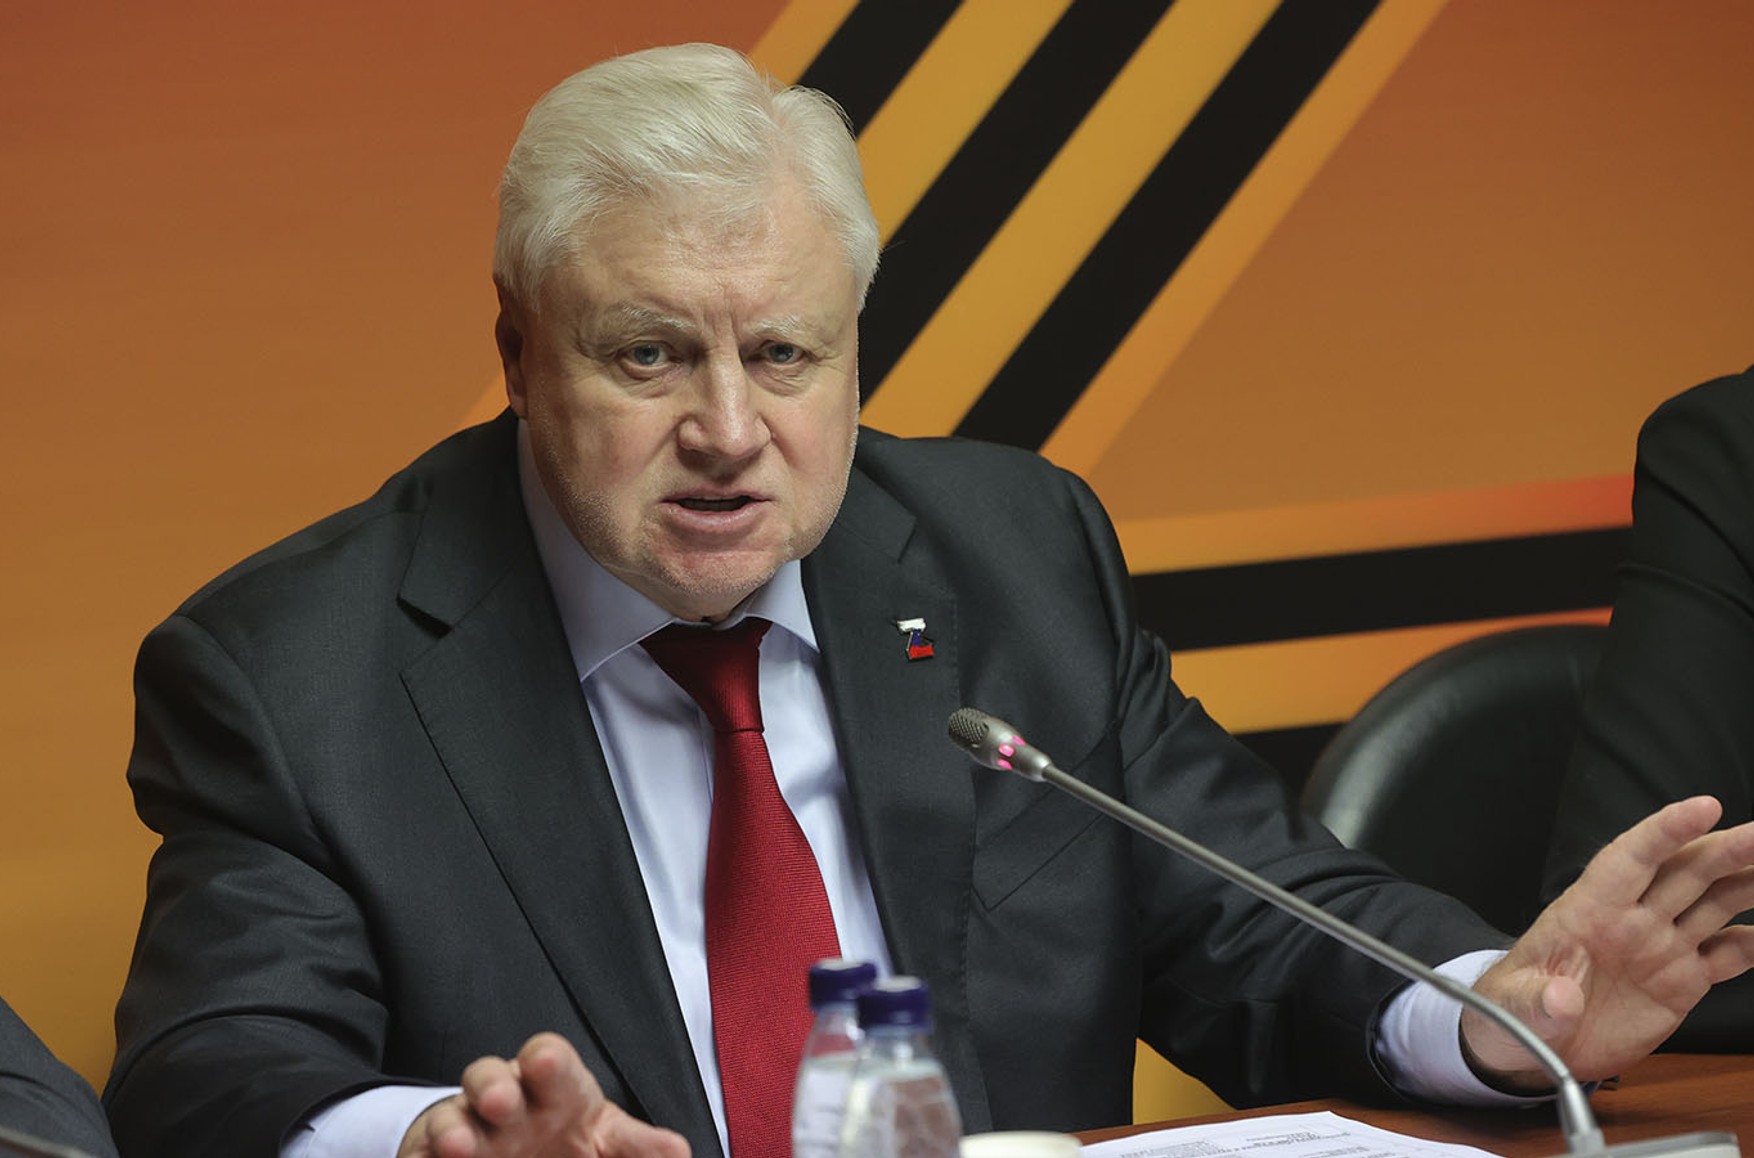 МВД признало жалобу на то, что Сергей Миронов называет войну в Украине войной, «некорректной»